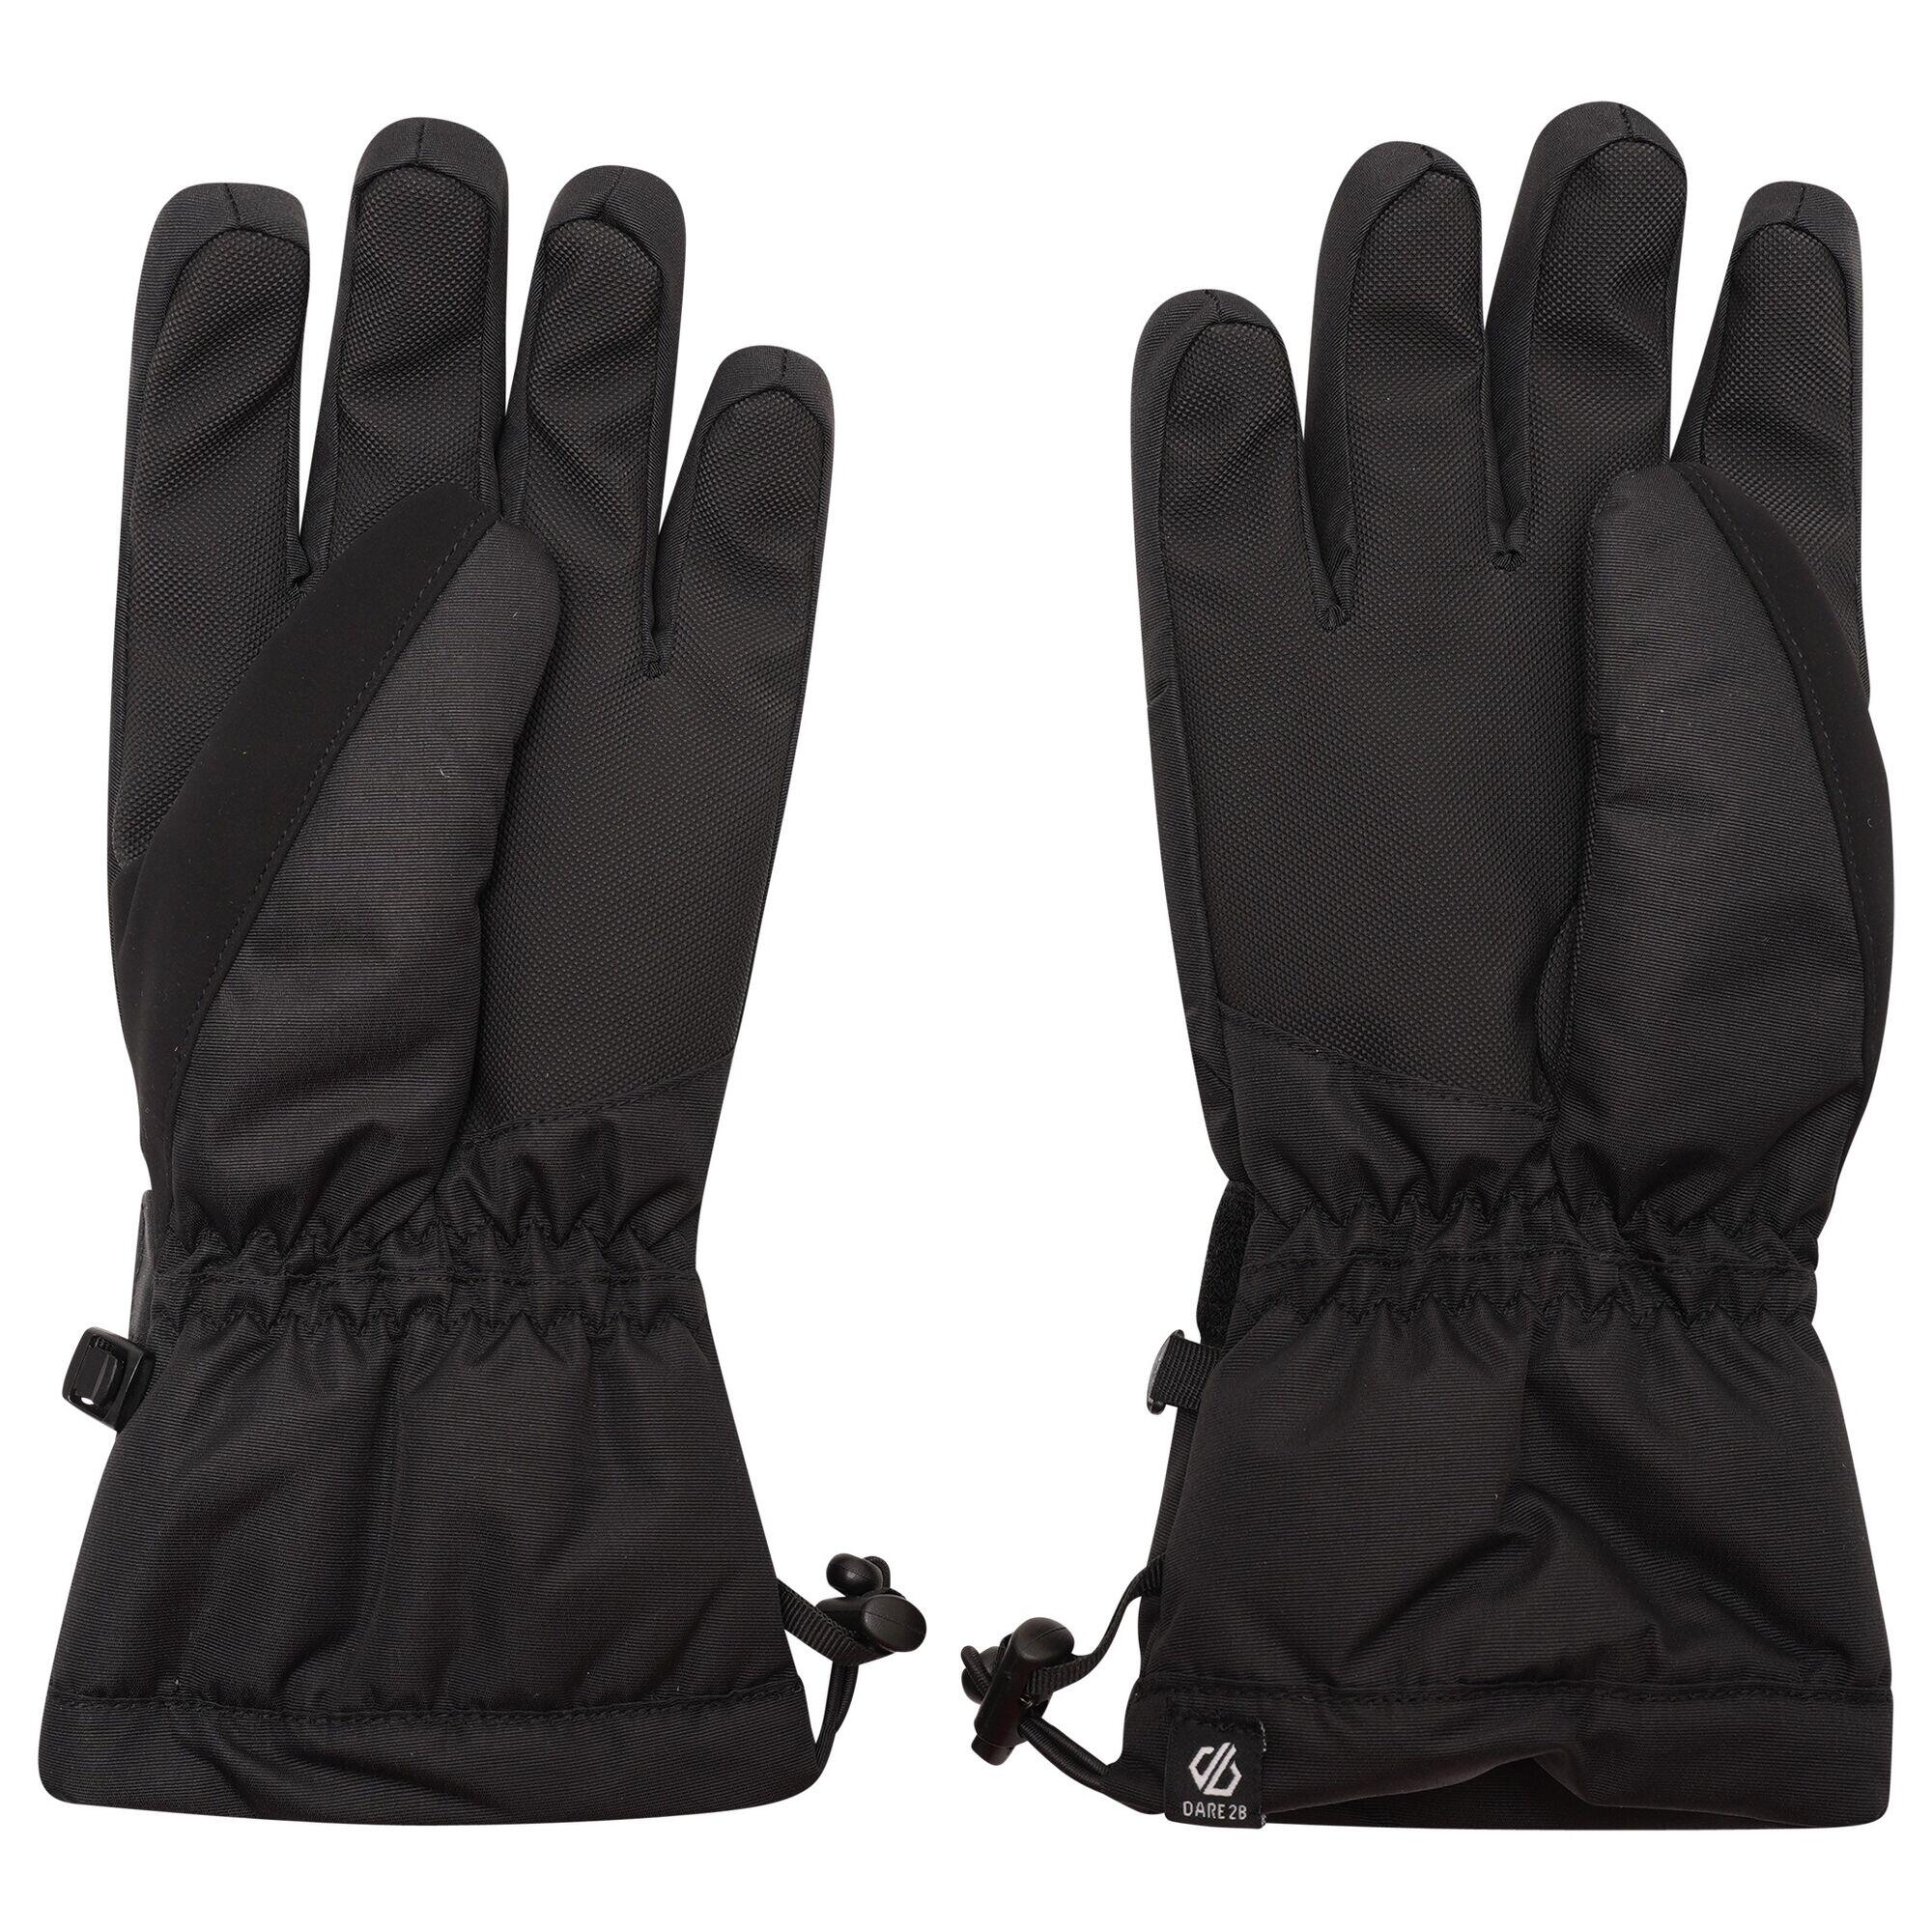 Acute Women's Ski Waterproof Gloves - Black 3/4